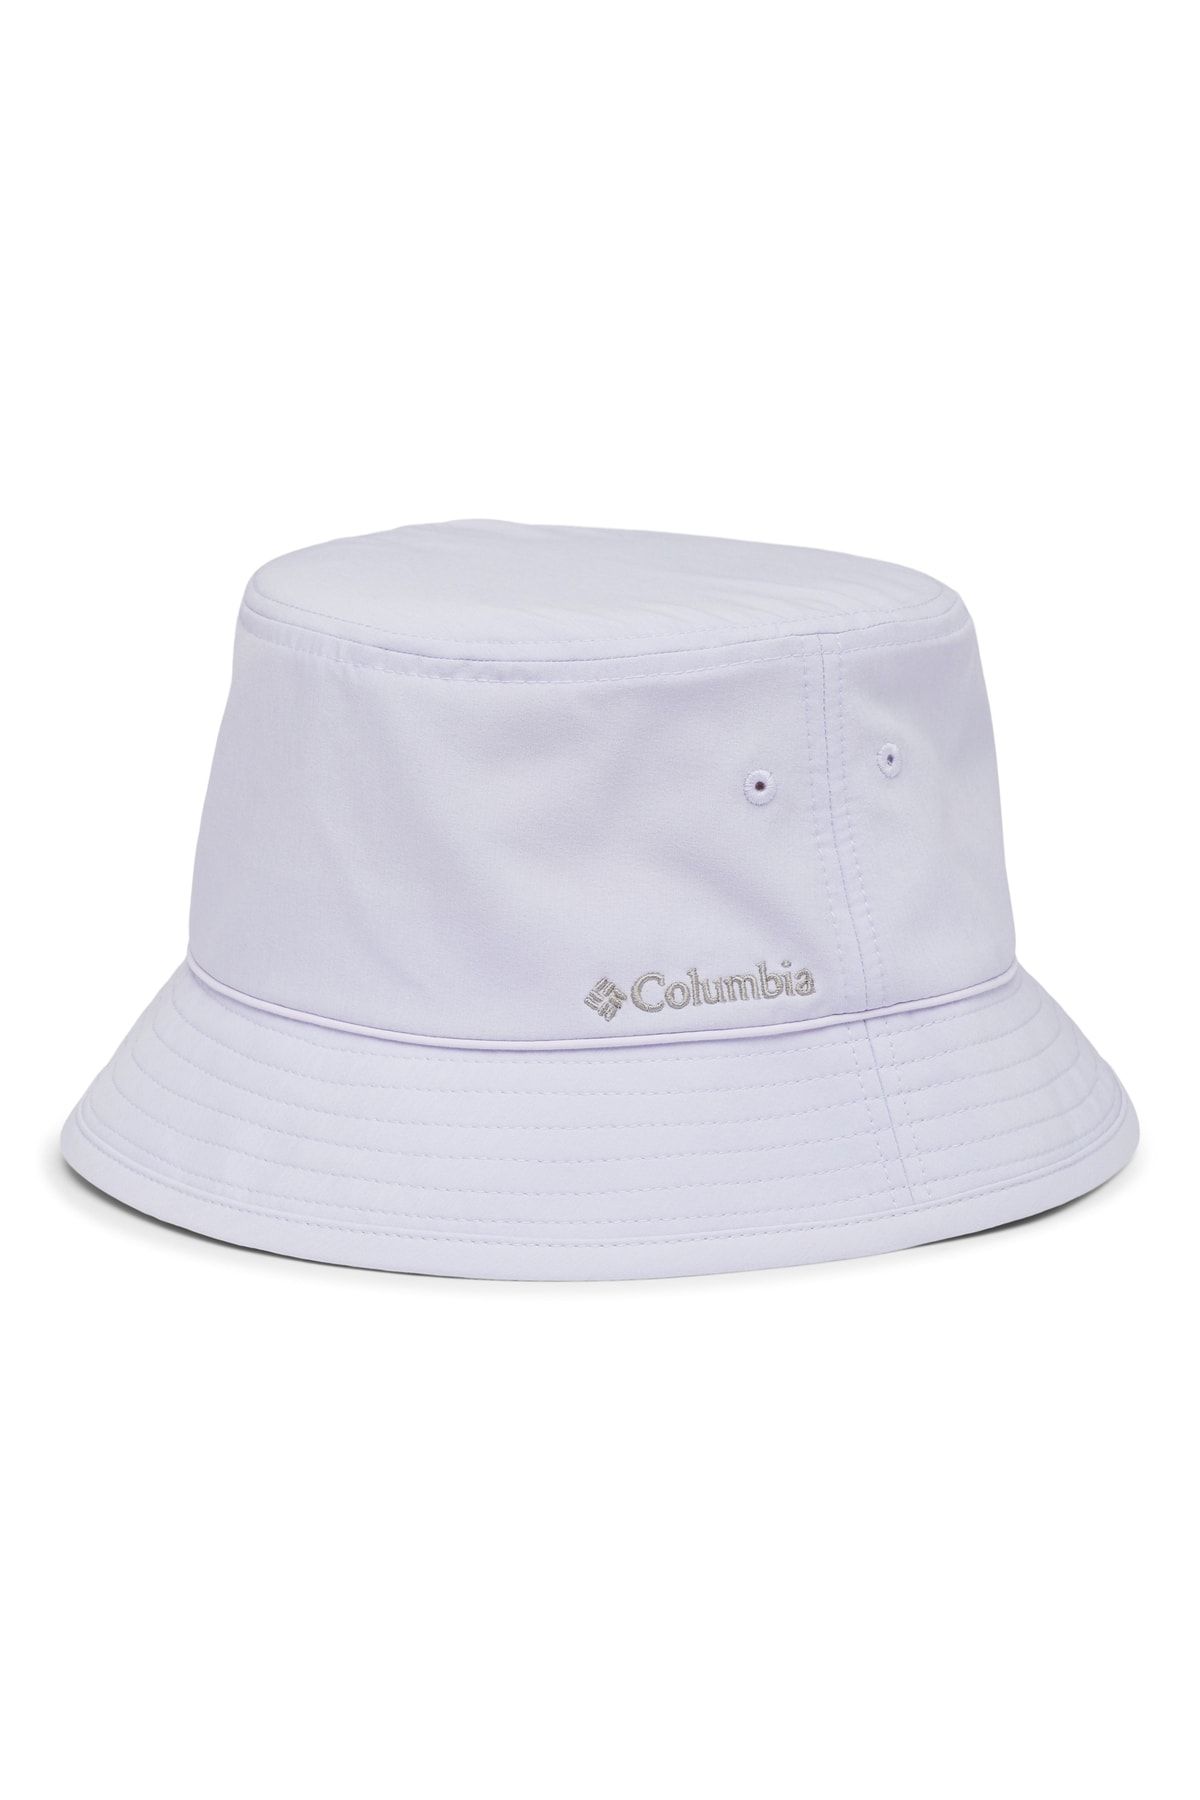 Columbia Pine Mountain Bucket Hat Unisex Şapka 1714881568